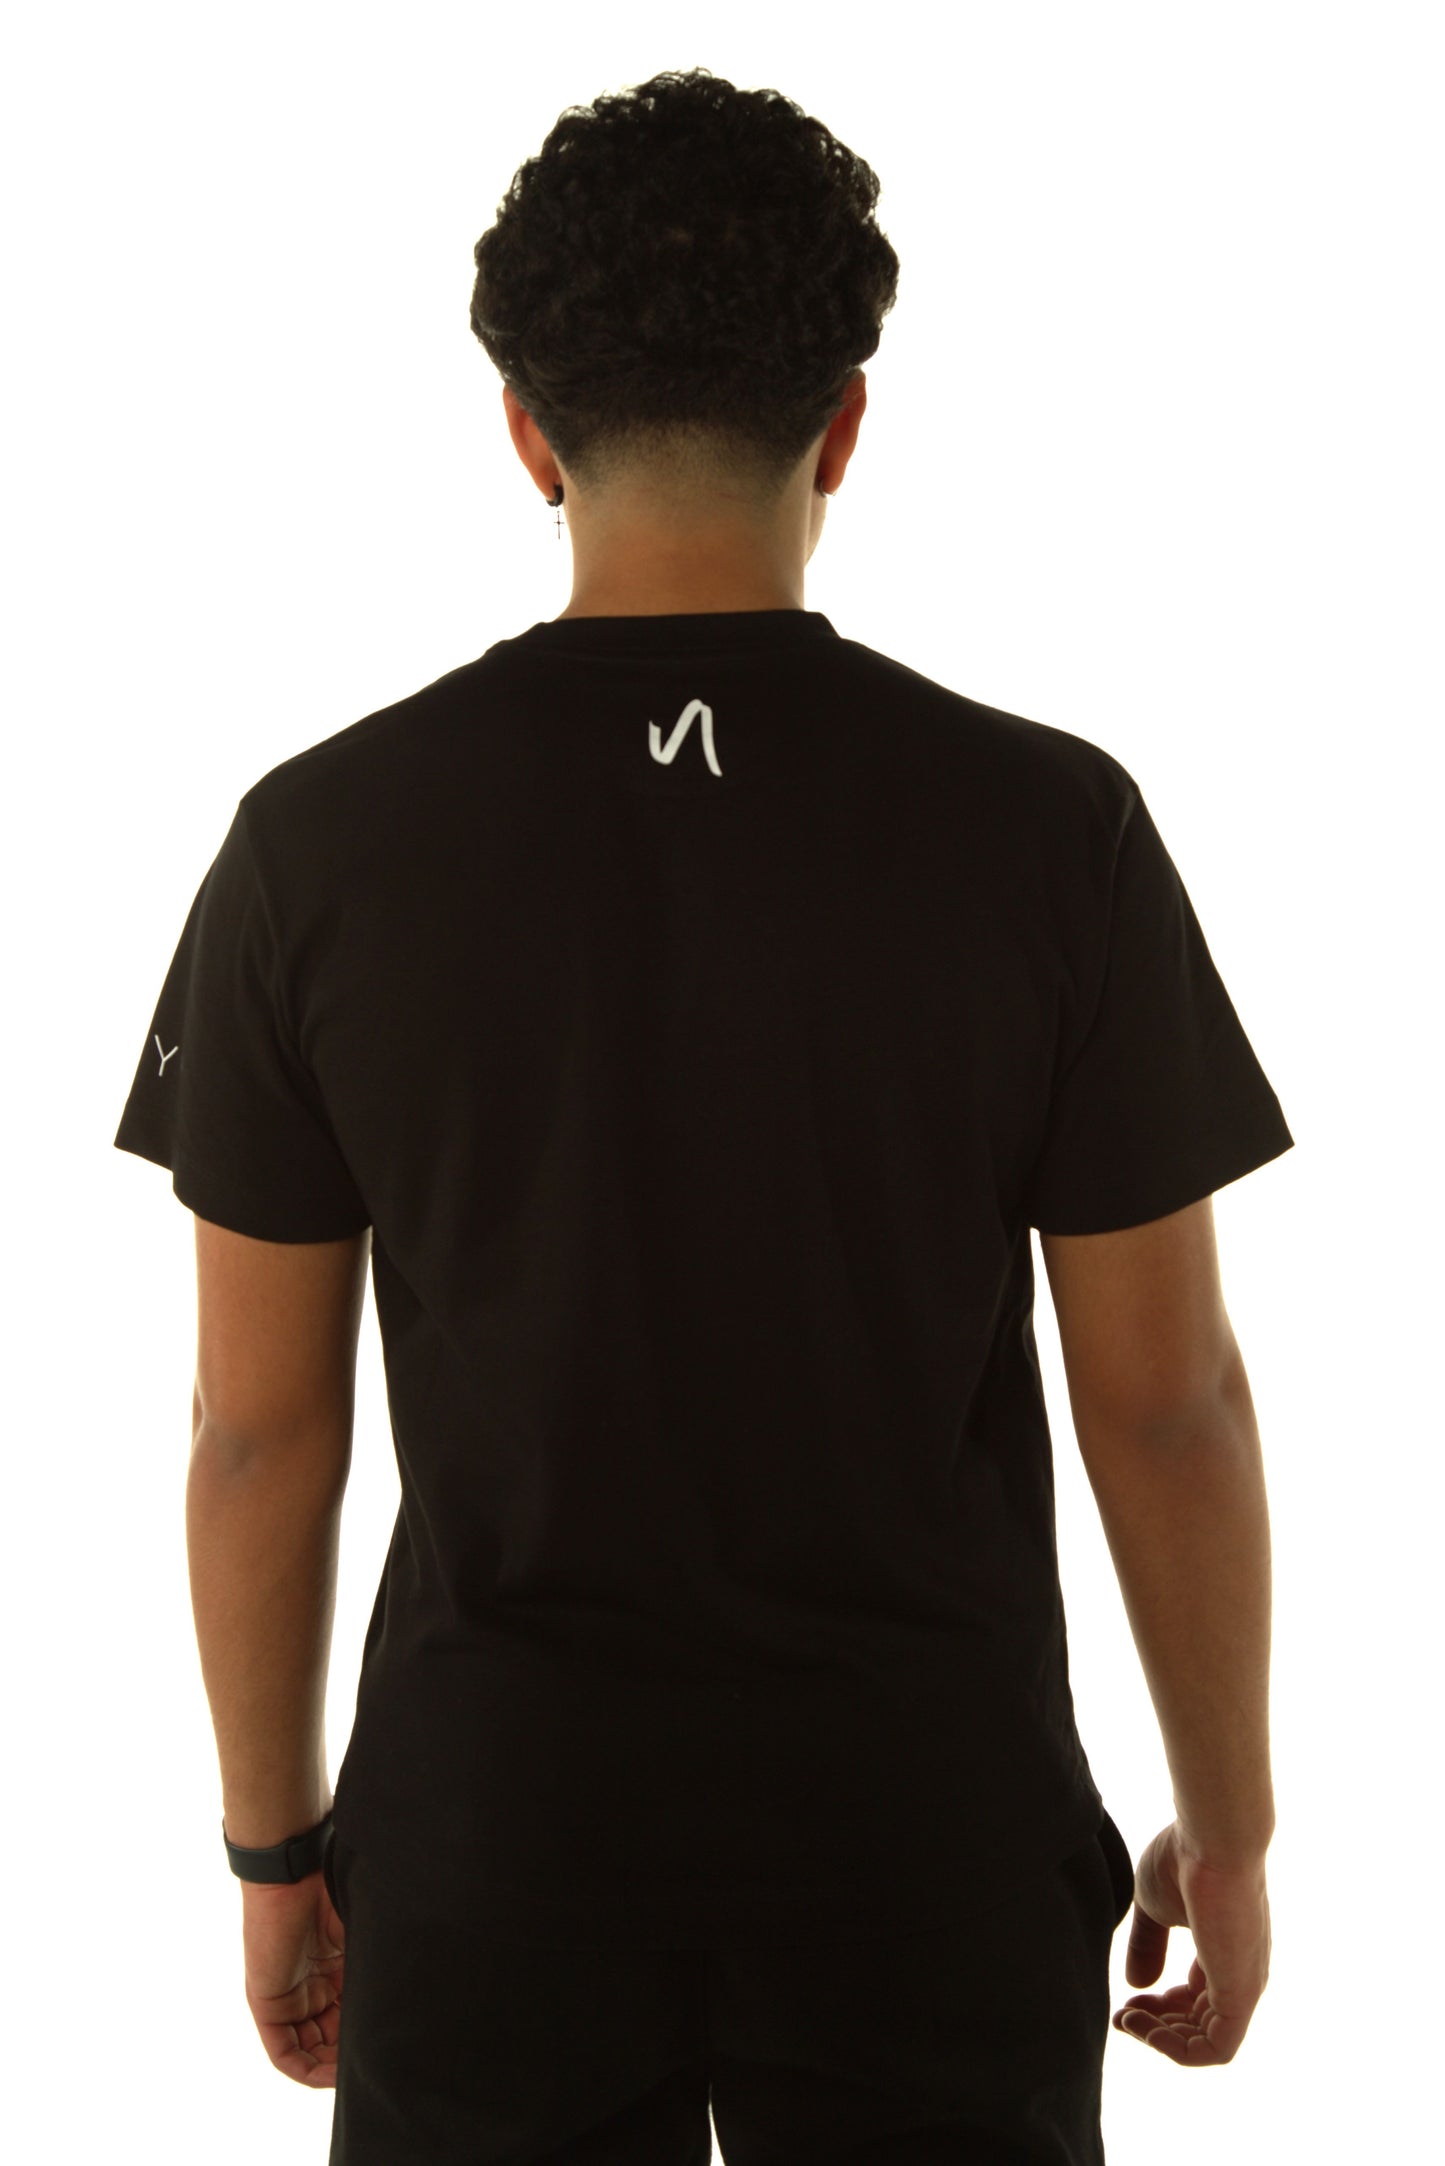 Unisex T-Shirt (Plain Front)